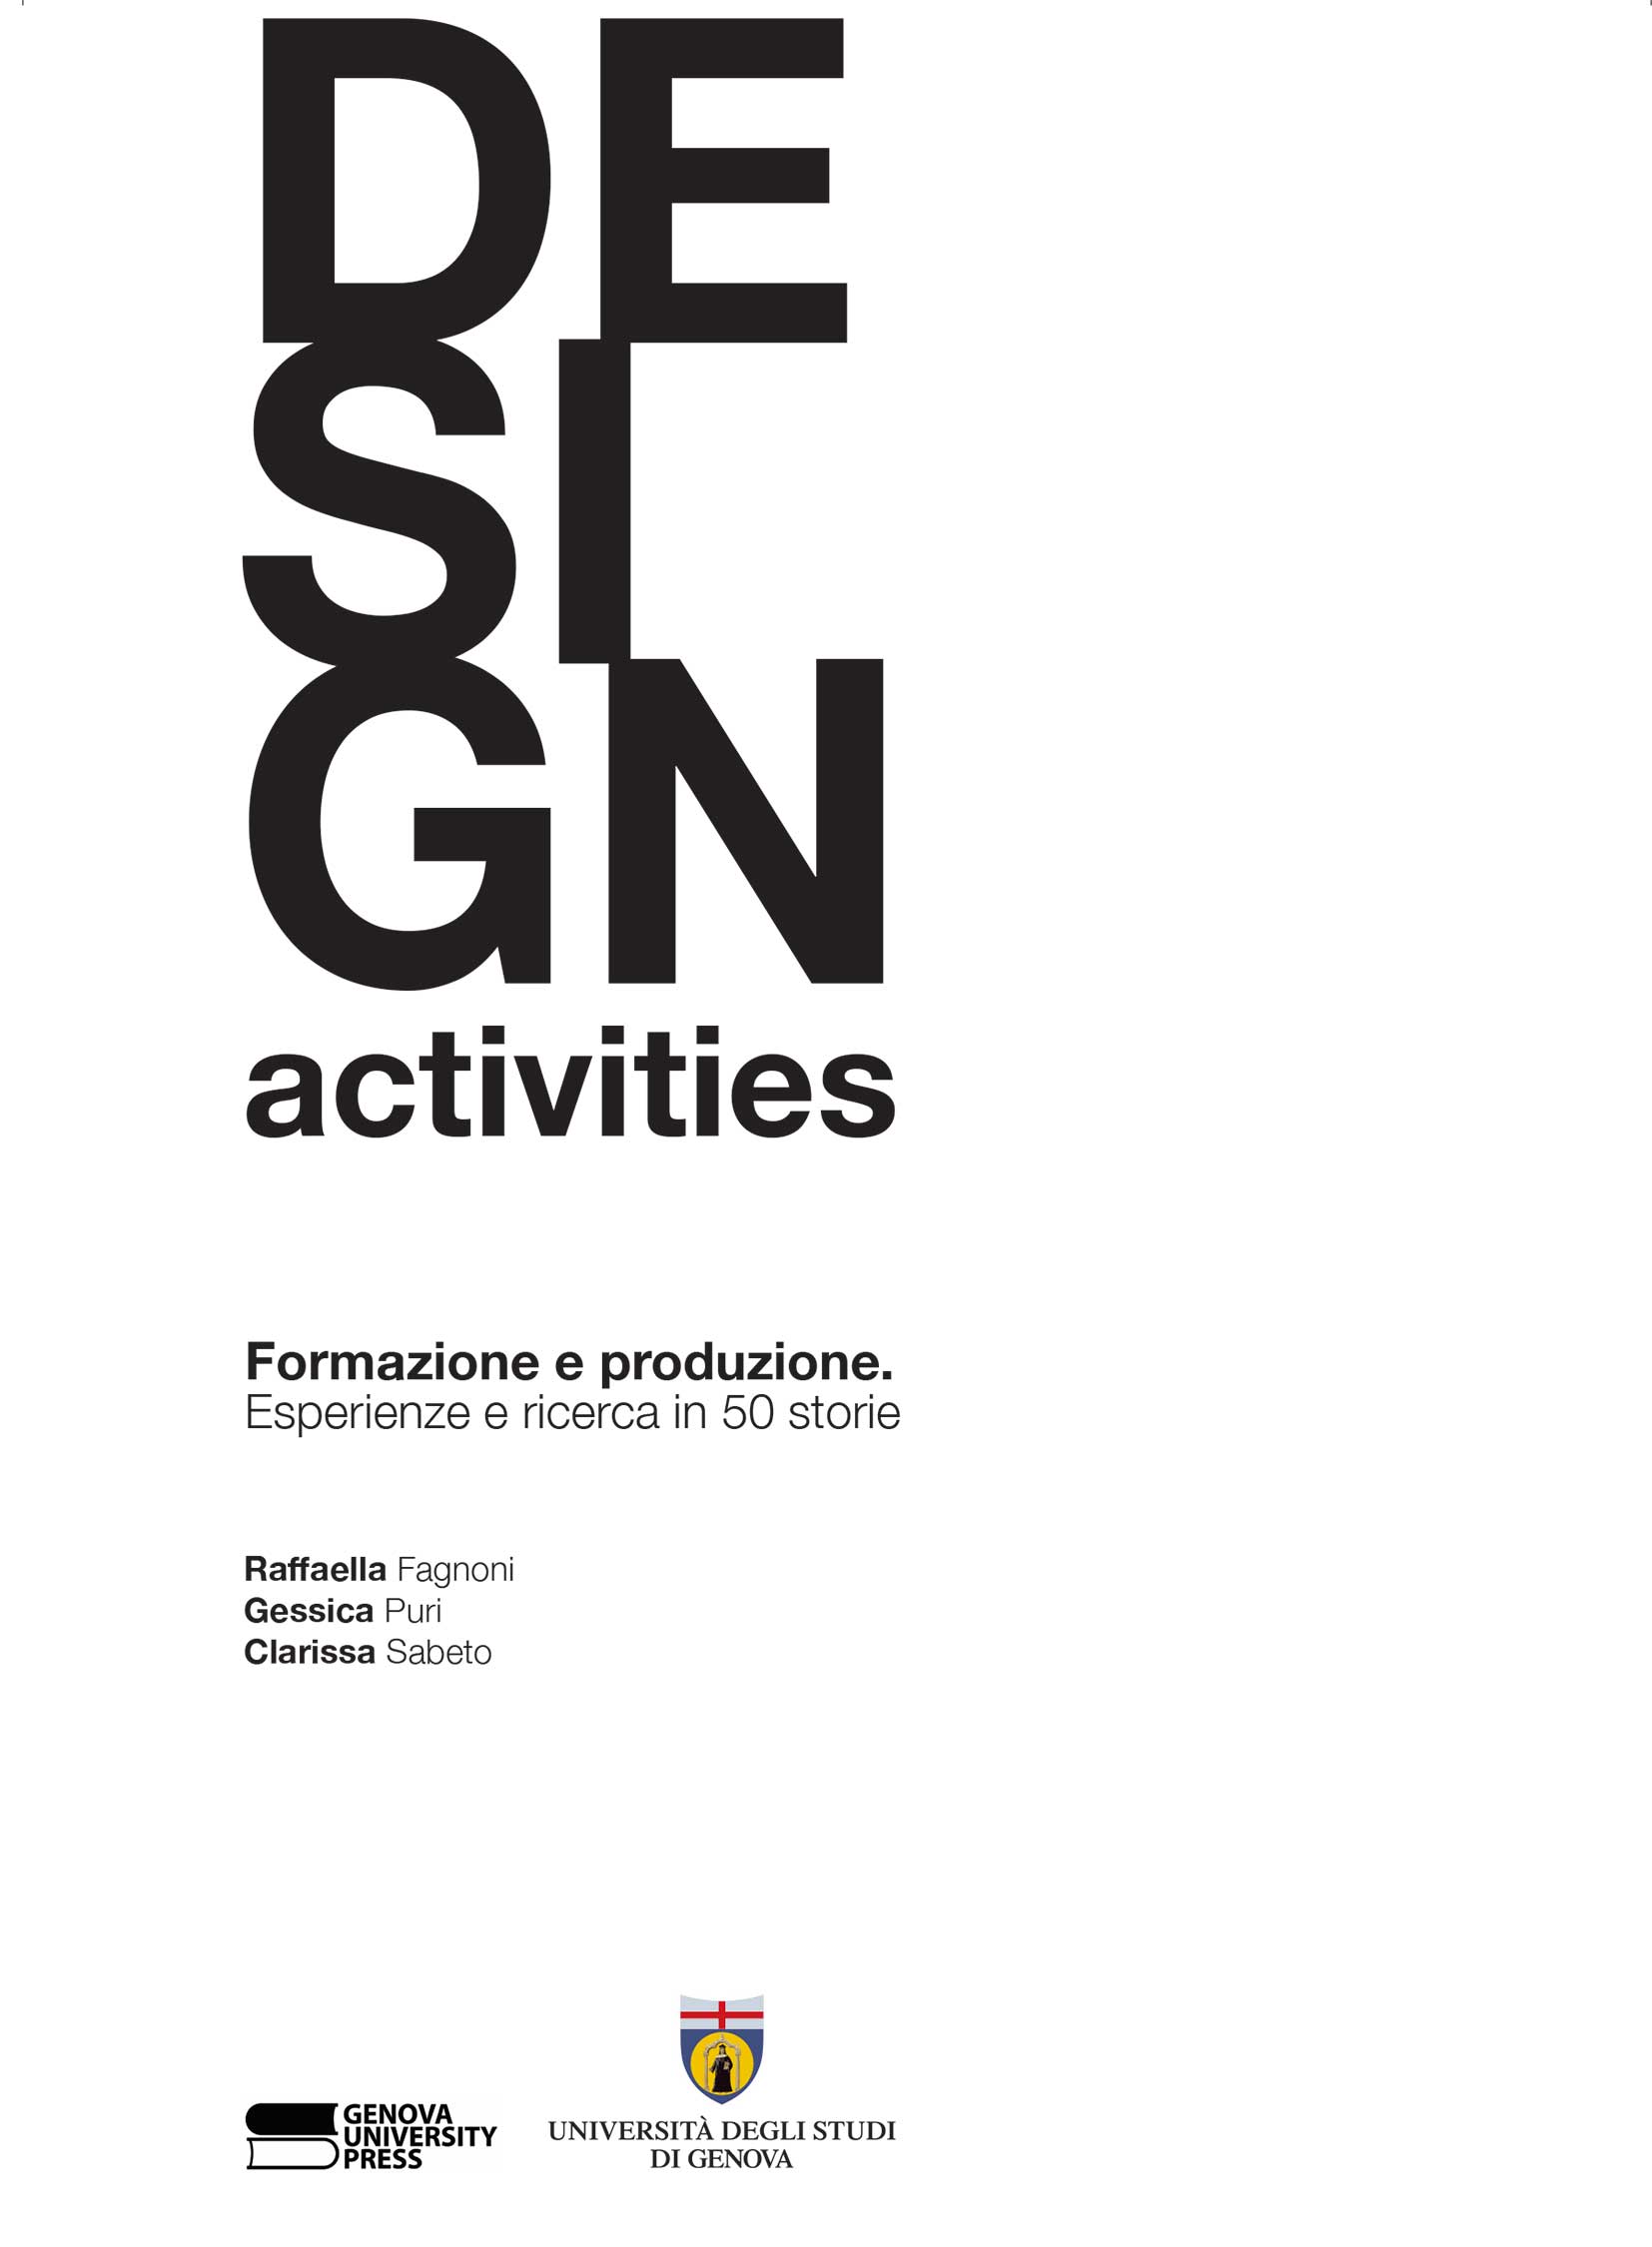 Design activities